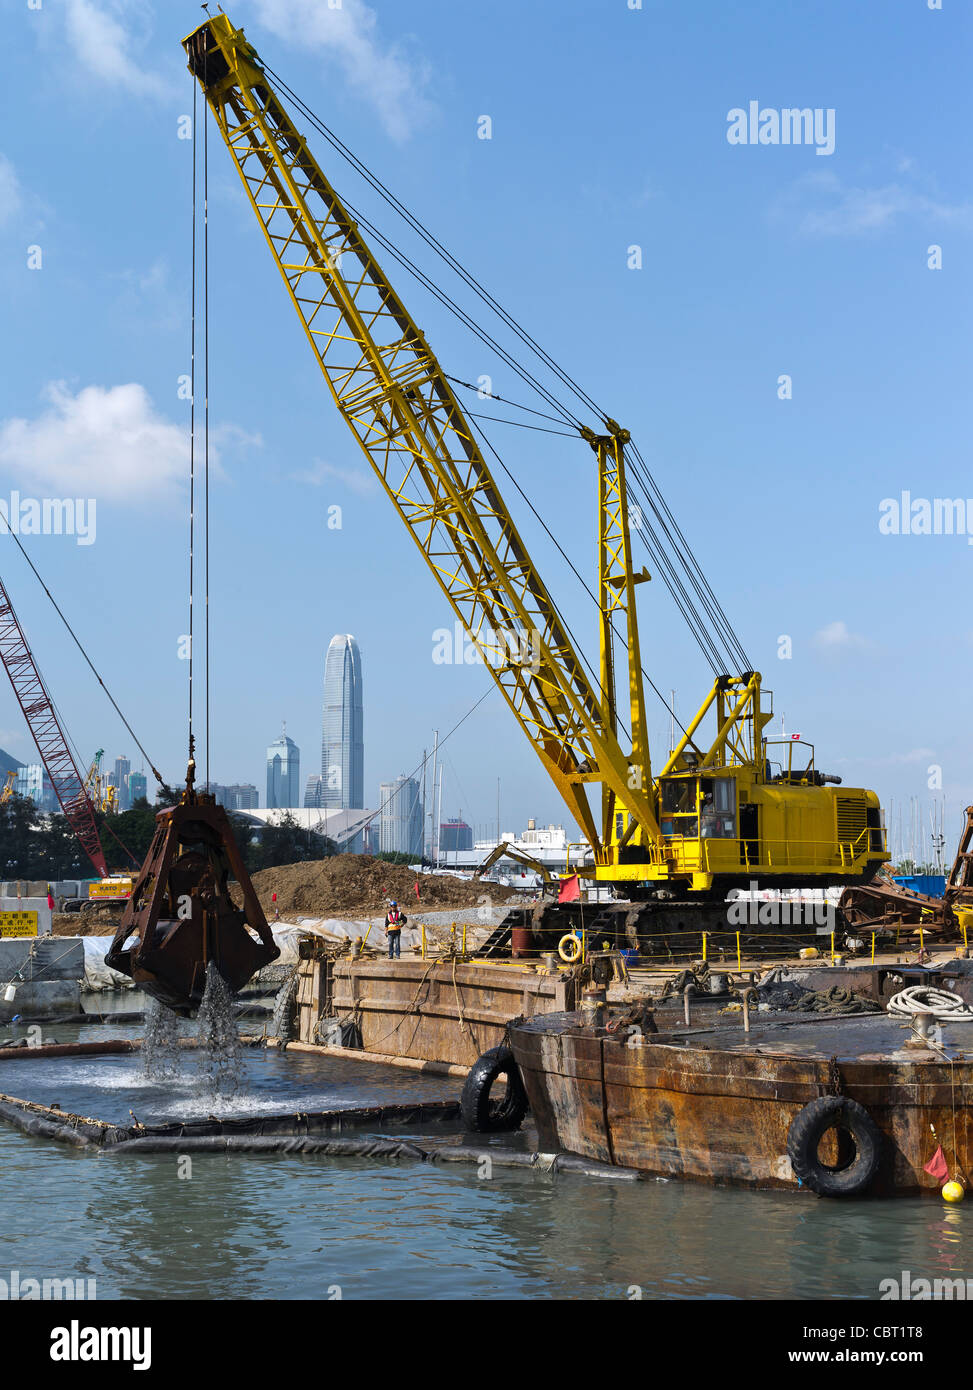 dh CAUSEWAY BAY HONG KONG Cranes dragado puerto reclamar tierra para Central Wan Chai carretera de circunvalación ingeniería puerto construcción de recuperación china Foto de stock